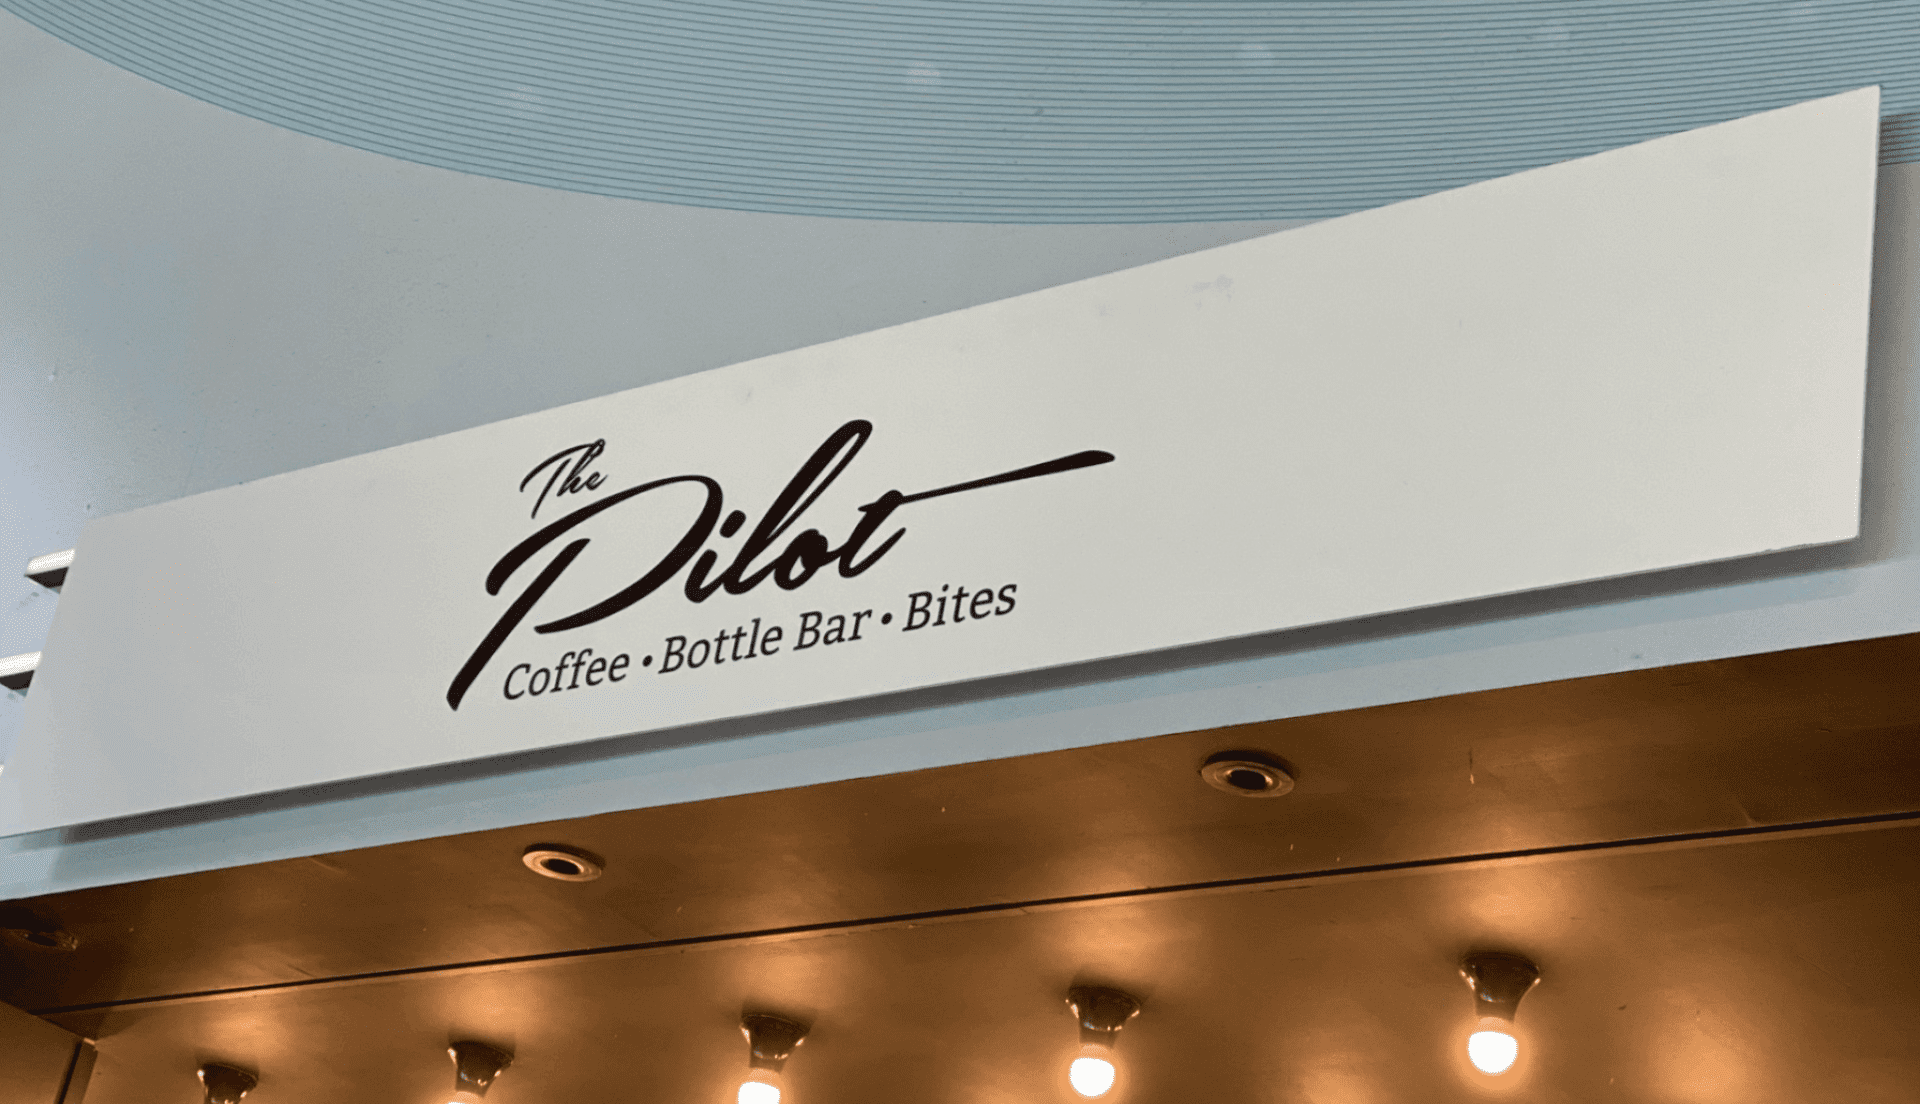 The Pilot Café at London Southend Airport